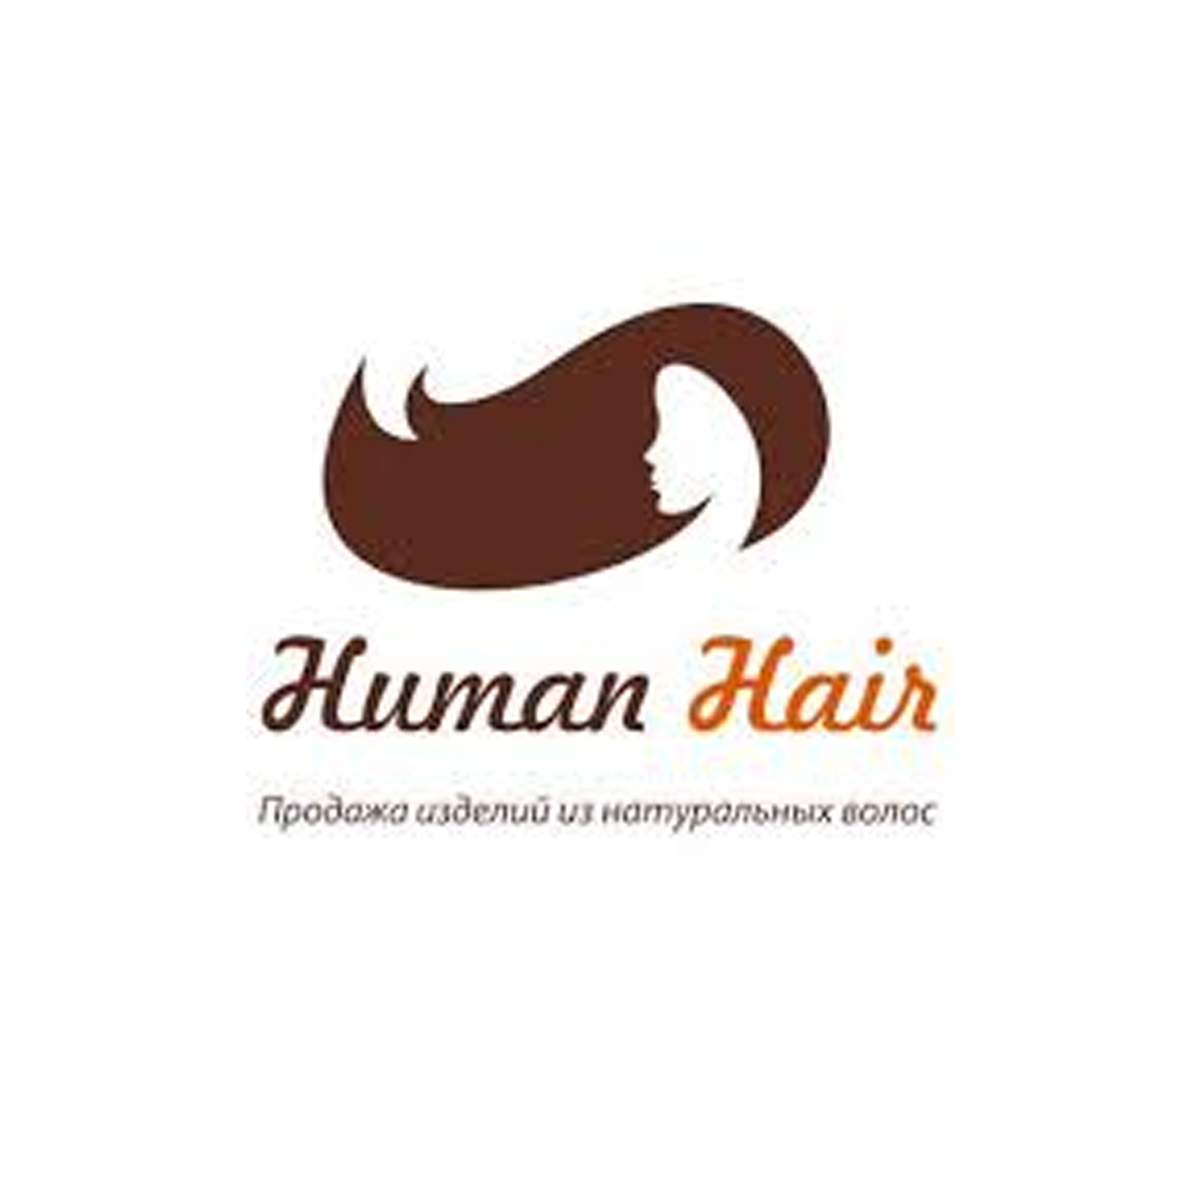 Human Hair